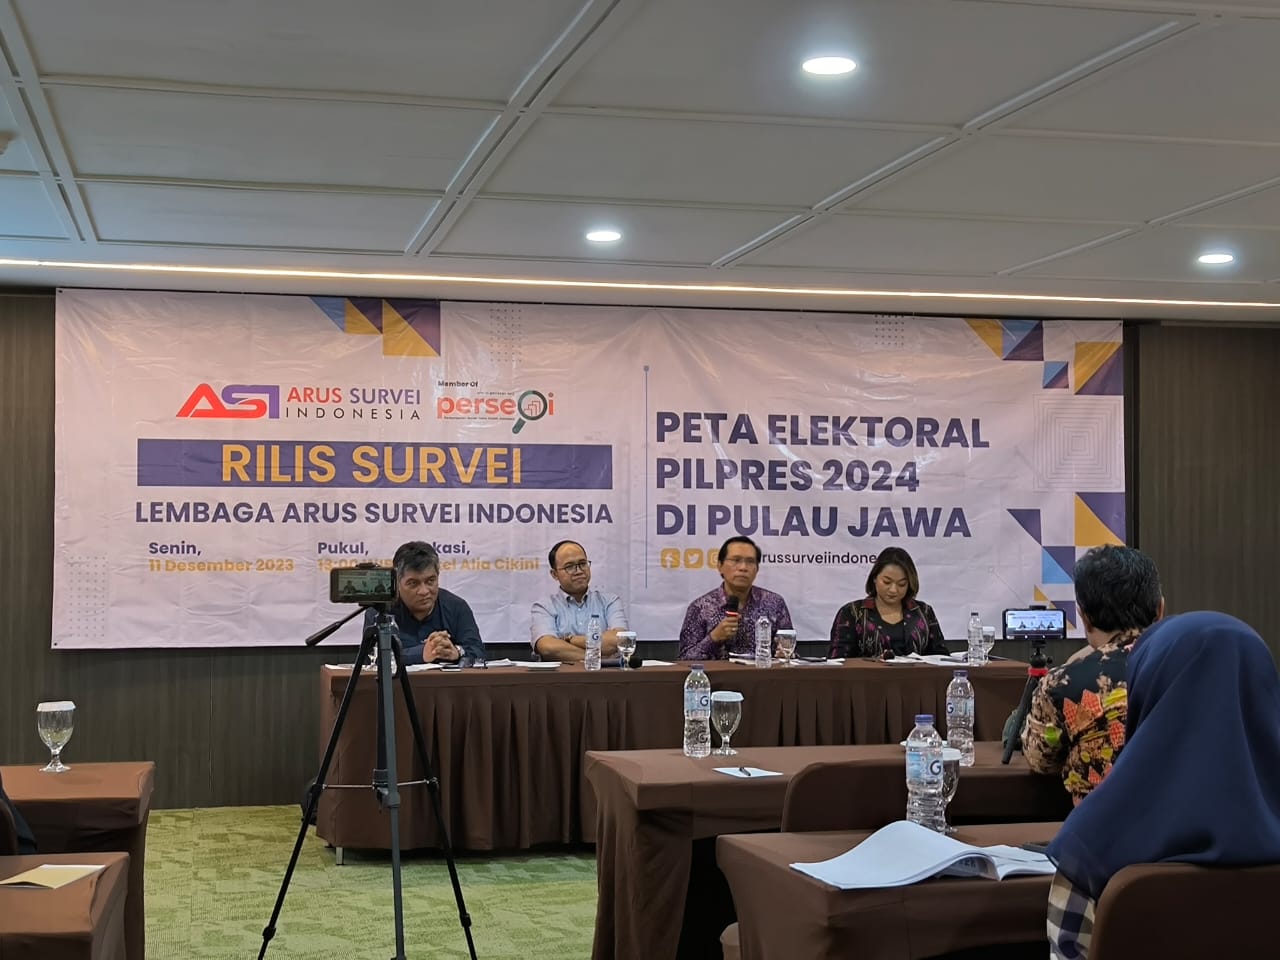 Program Kerja Jadi Faktor Penentu Kemenangan Capres di Pulau Jawa, Pemilih Rasional dan Swing Voters Tinggi